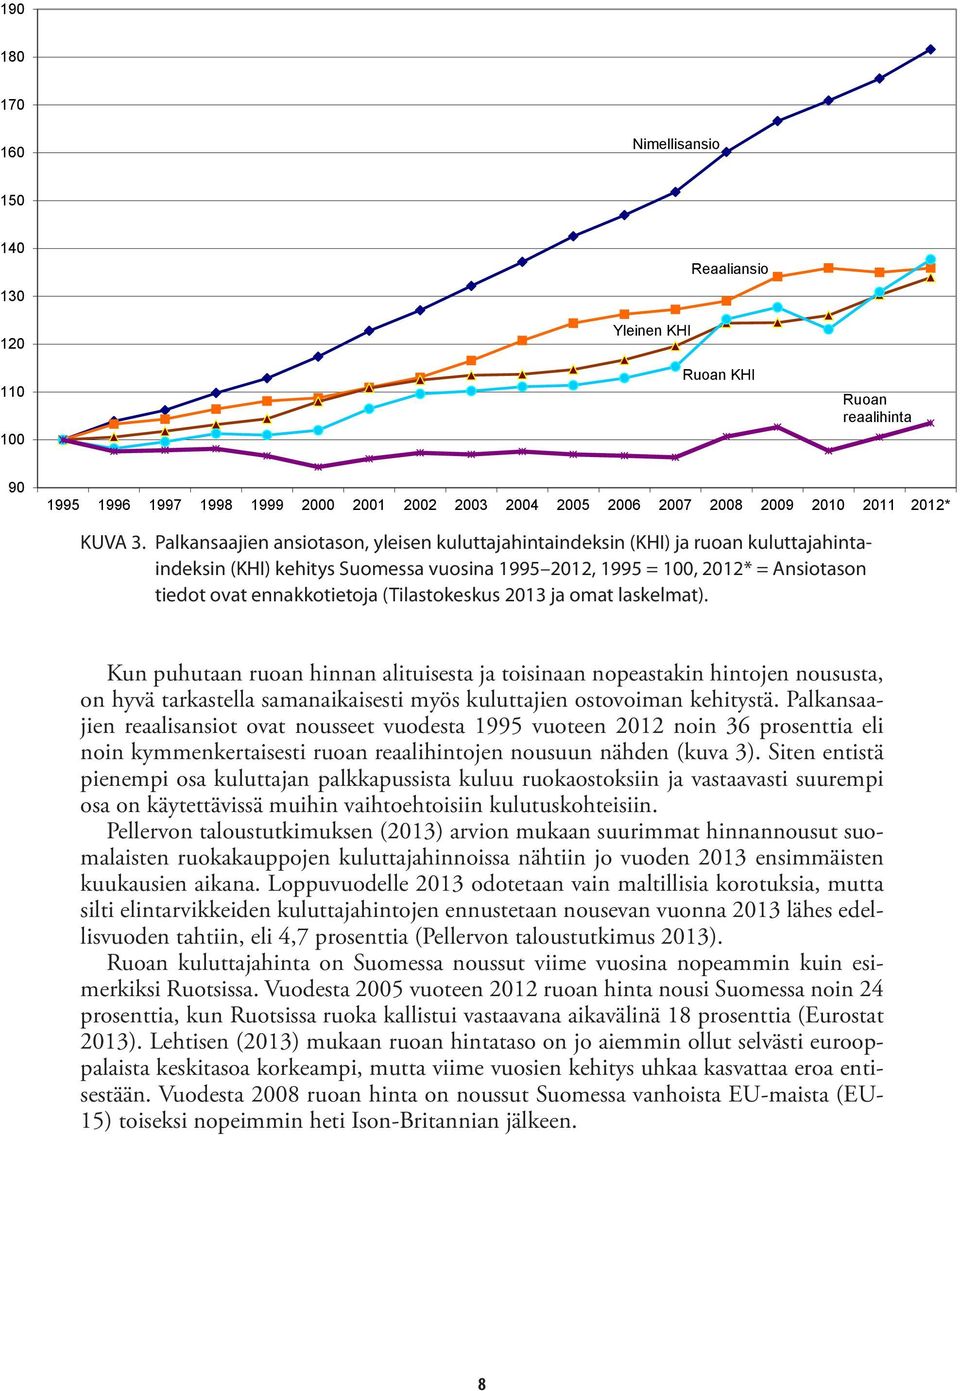 Palkansaajien ansiotason, yleisen kuluttajahintaindeksin (KHI) ja ruoan kuluttajahintaindeksin (KHI) kehitys Suomessa vuosina 1995 2012, 1995 = 100, 2012* = Ansiotason tiedot ovat ennakkotietoja